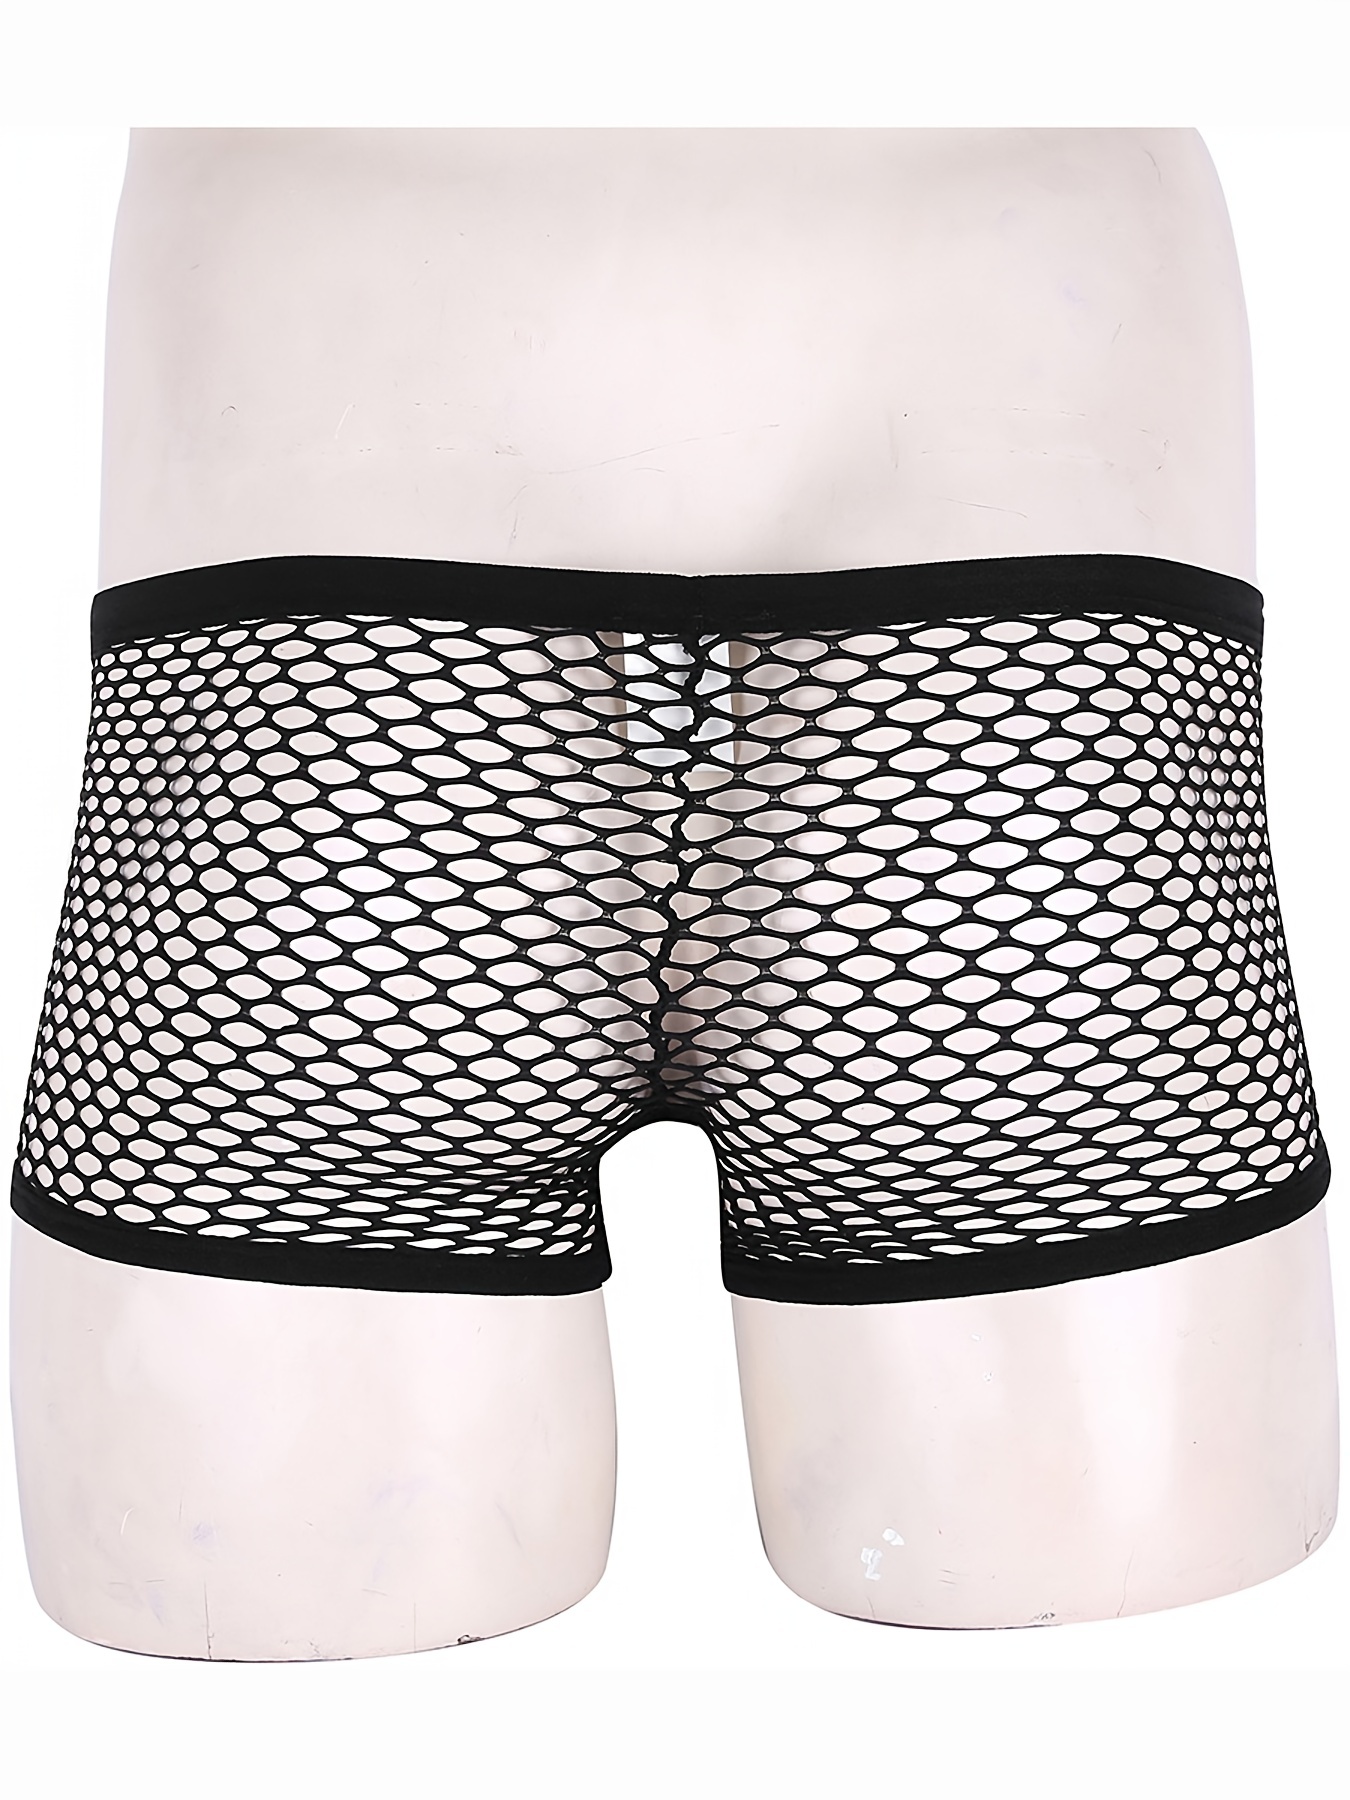 Sexy Men Transparent Net Mesh Boxer Brief Trunks Lingerie Underwear Shorts  L-2XL